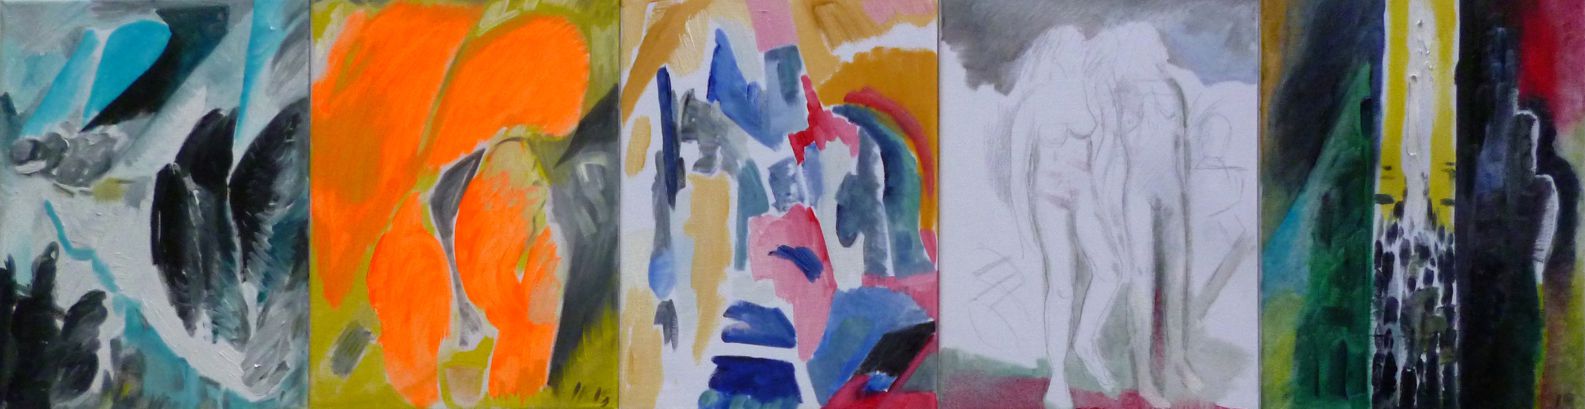 Ingrid Rafael, Terror hat ein Geschlecht, 2015  Öl LW Bleistift    40 x 150 cm